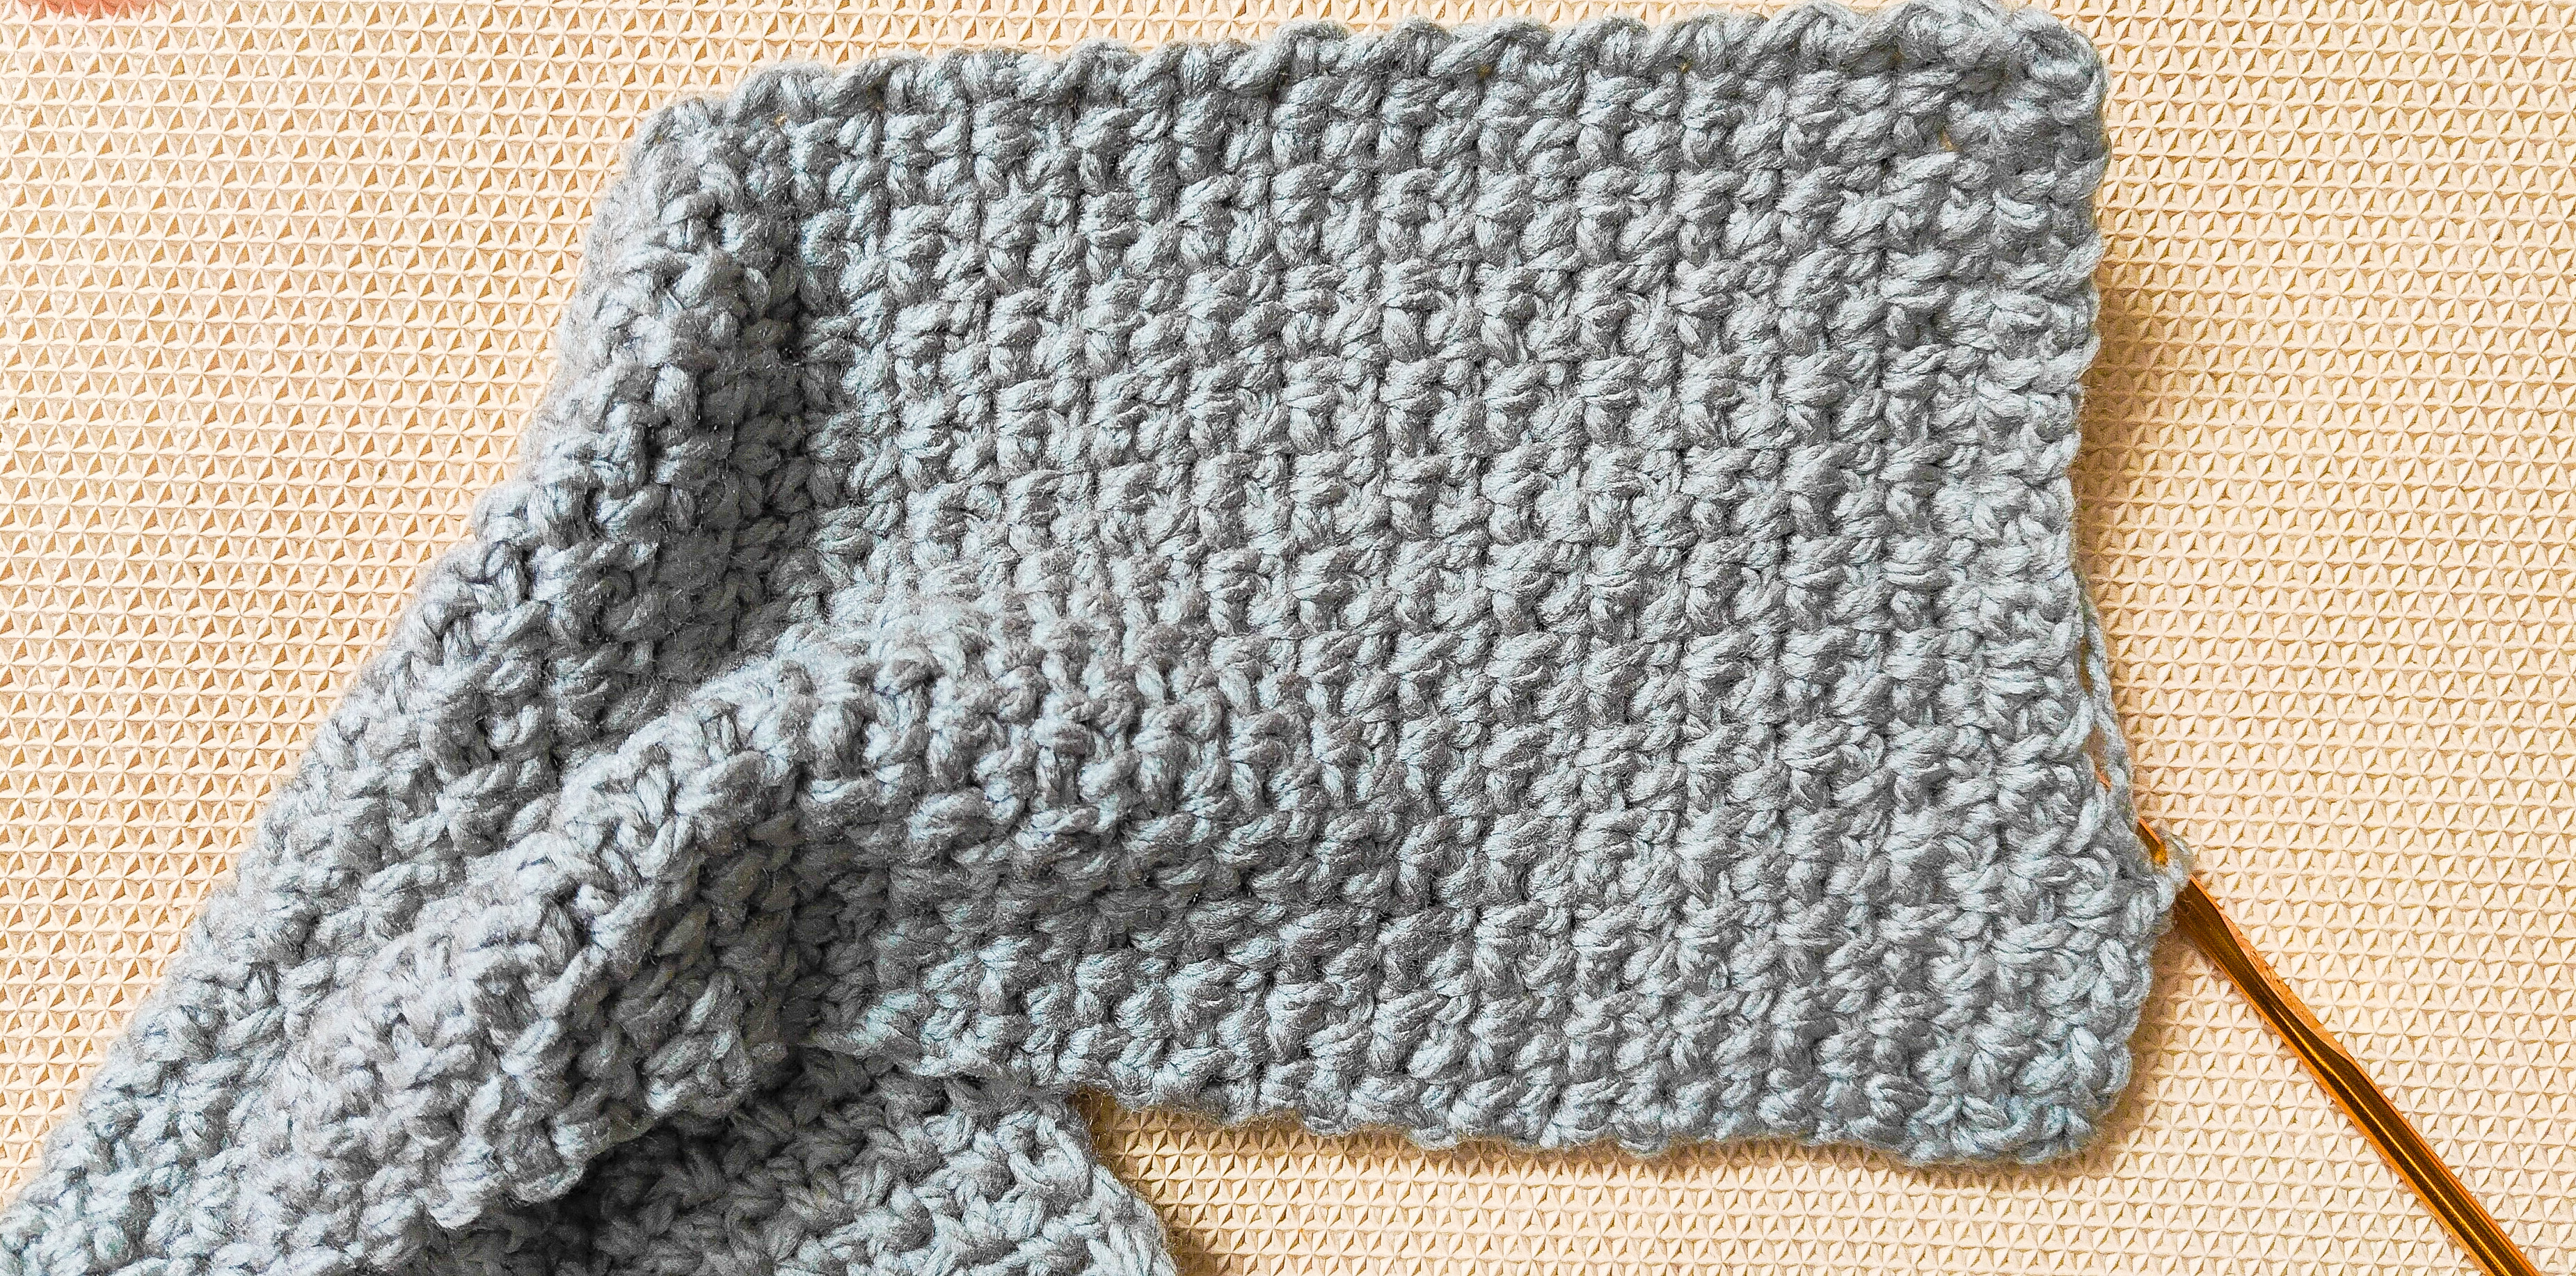 Crochet Seedling Blanket - in 12 sizes! - free pattern